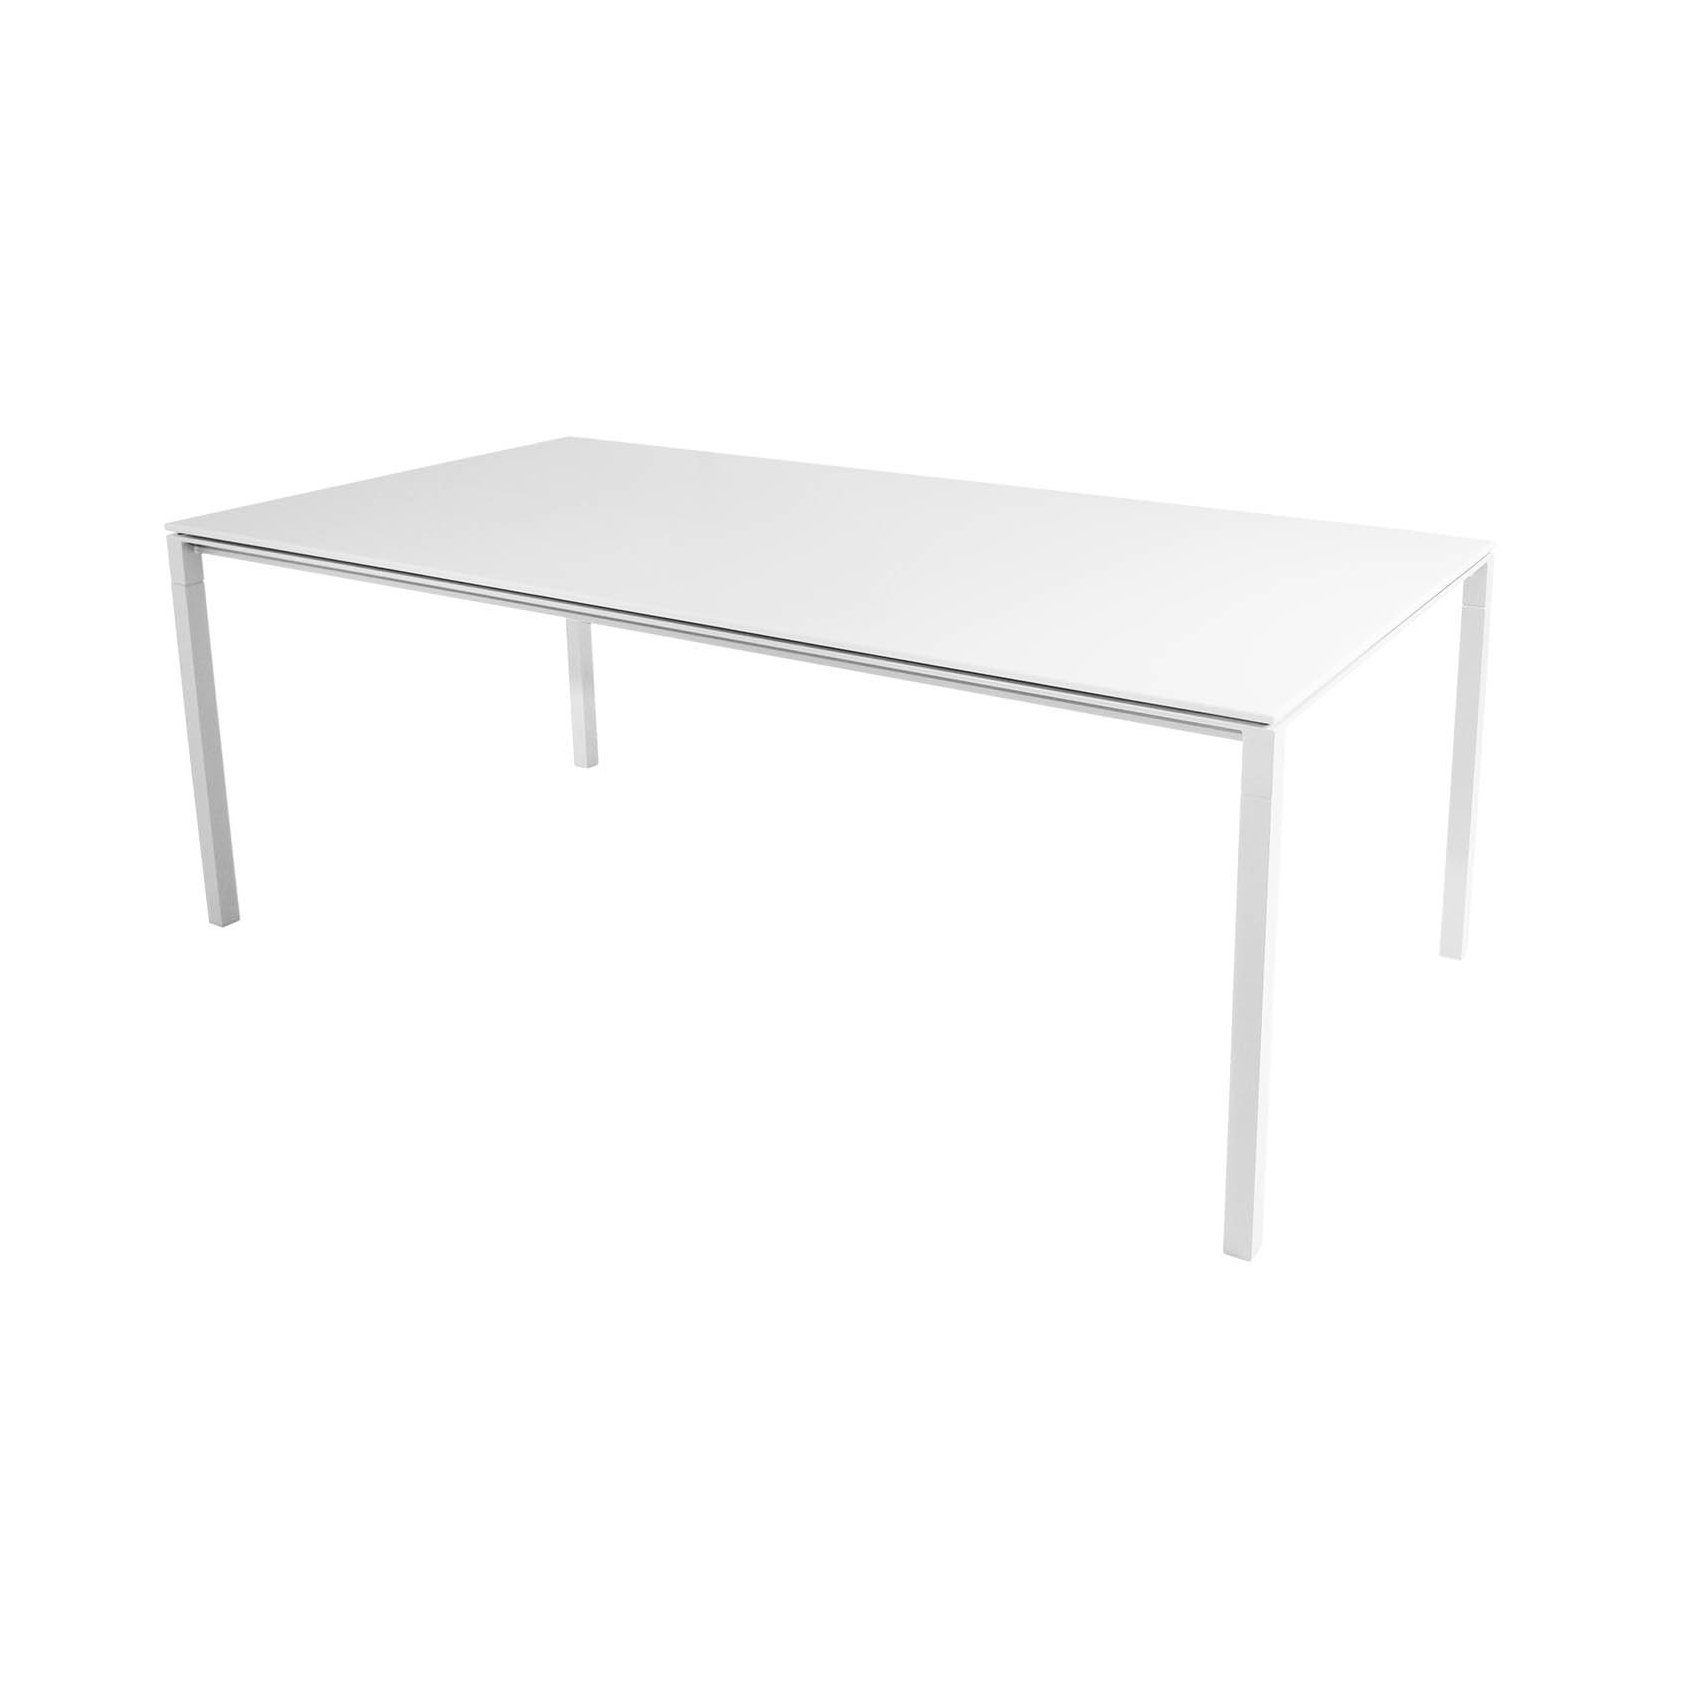 Cane-line Gartentisch "Pure", Gestell Aluminium weiß, Tischplatte HI-Core weiß, 200x100 cm